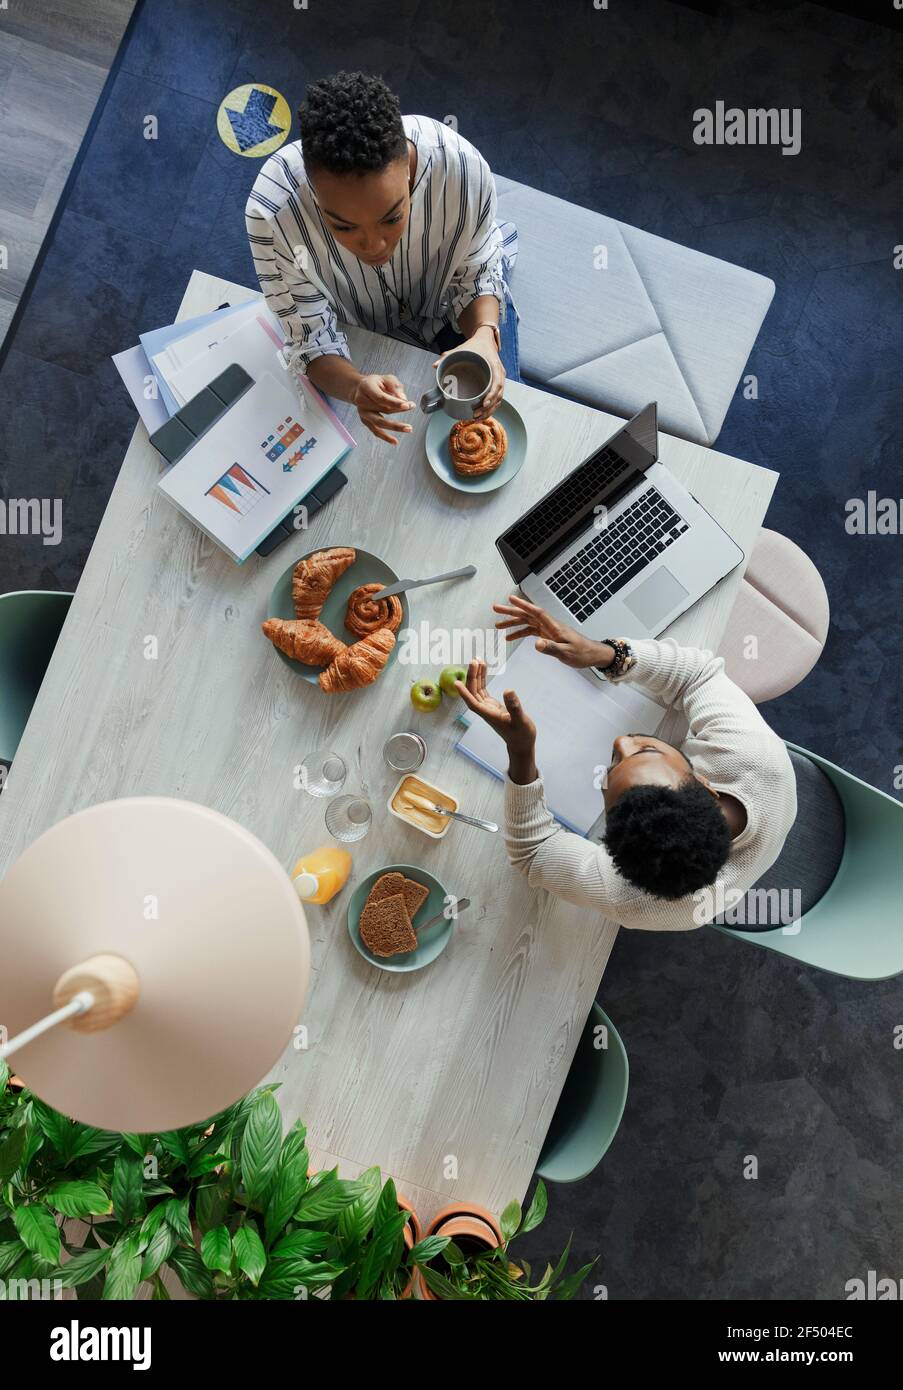 Gente de negocios se reúne durante el desayuno en la mesa de la oficina Foto de stock